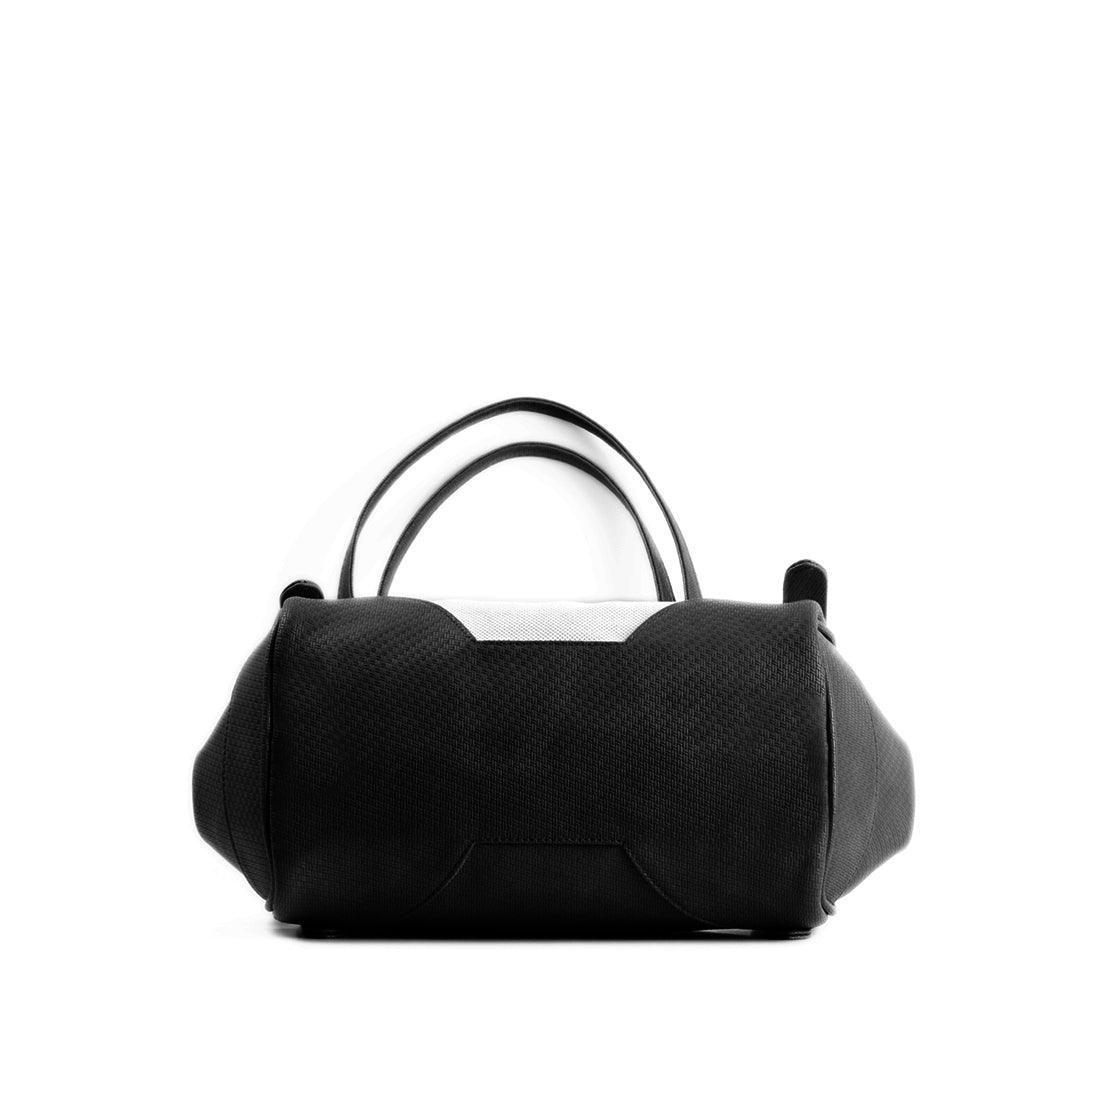 Black Leather Tote Bag Doggo - CANVAEGYPT